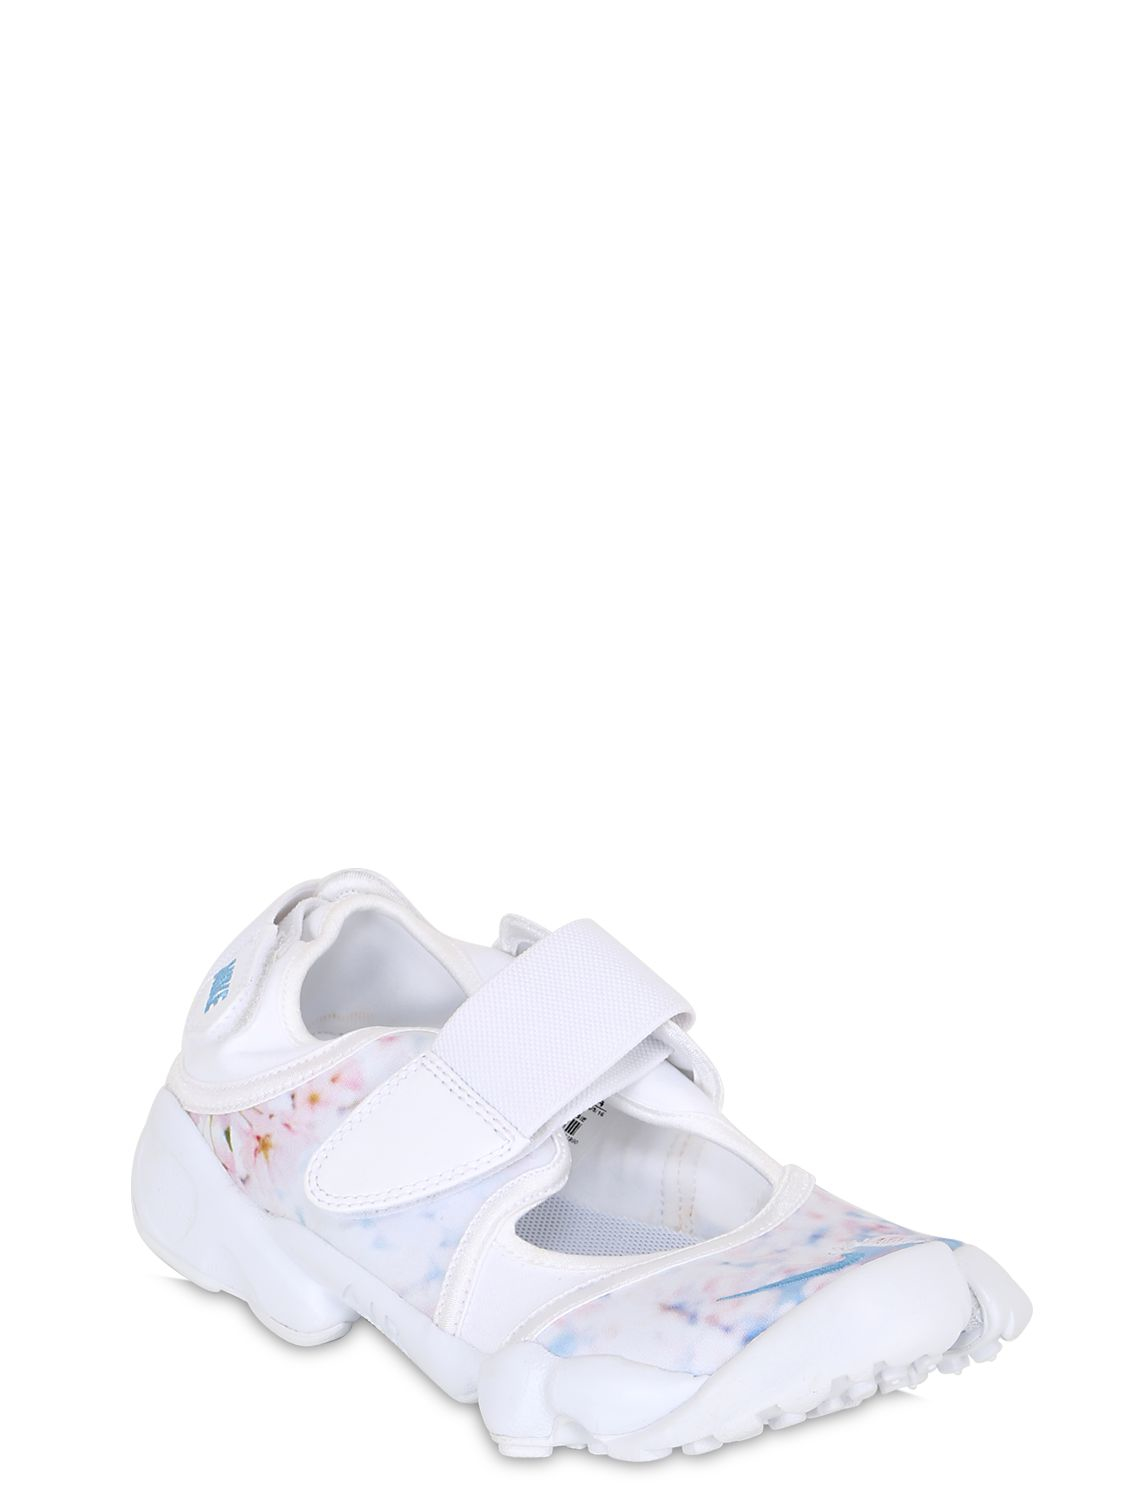 Nike Air Rift Cherry Blossom Nylon Sneakers in White | Lyst